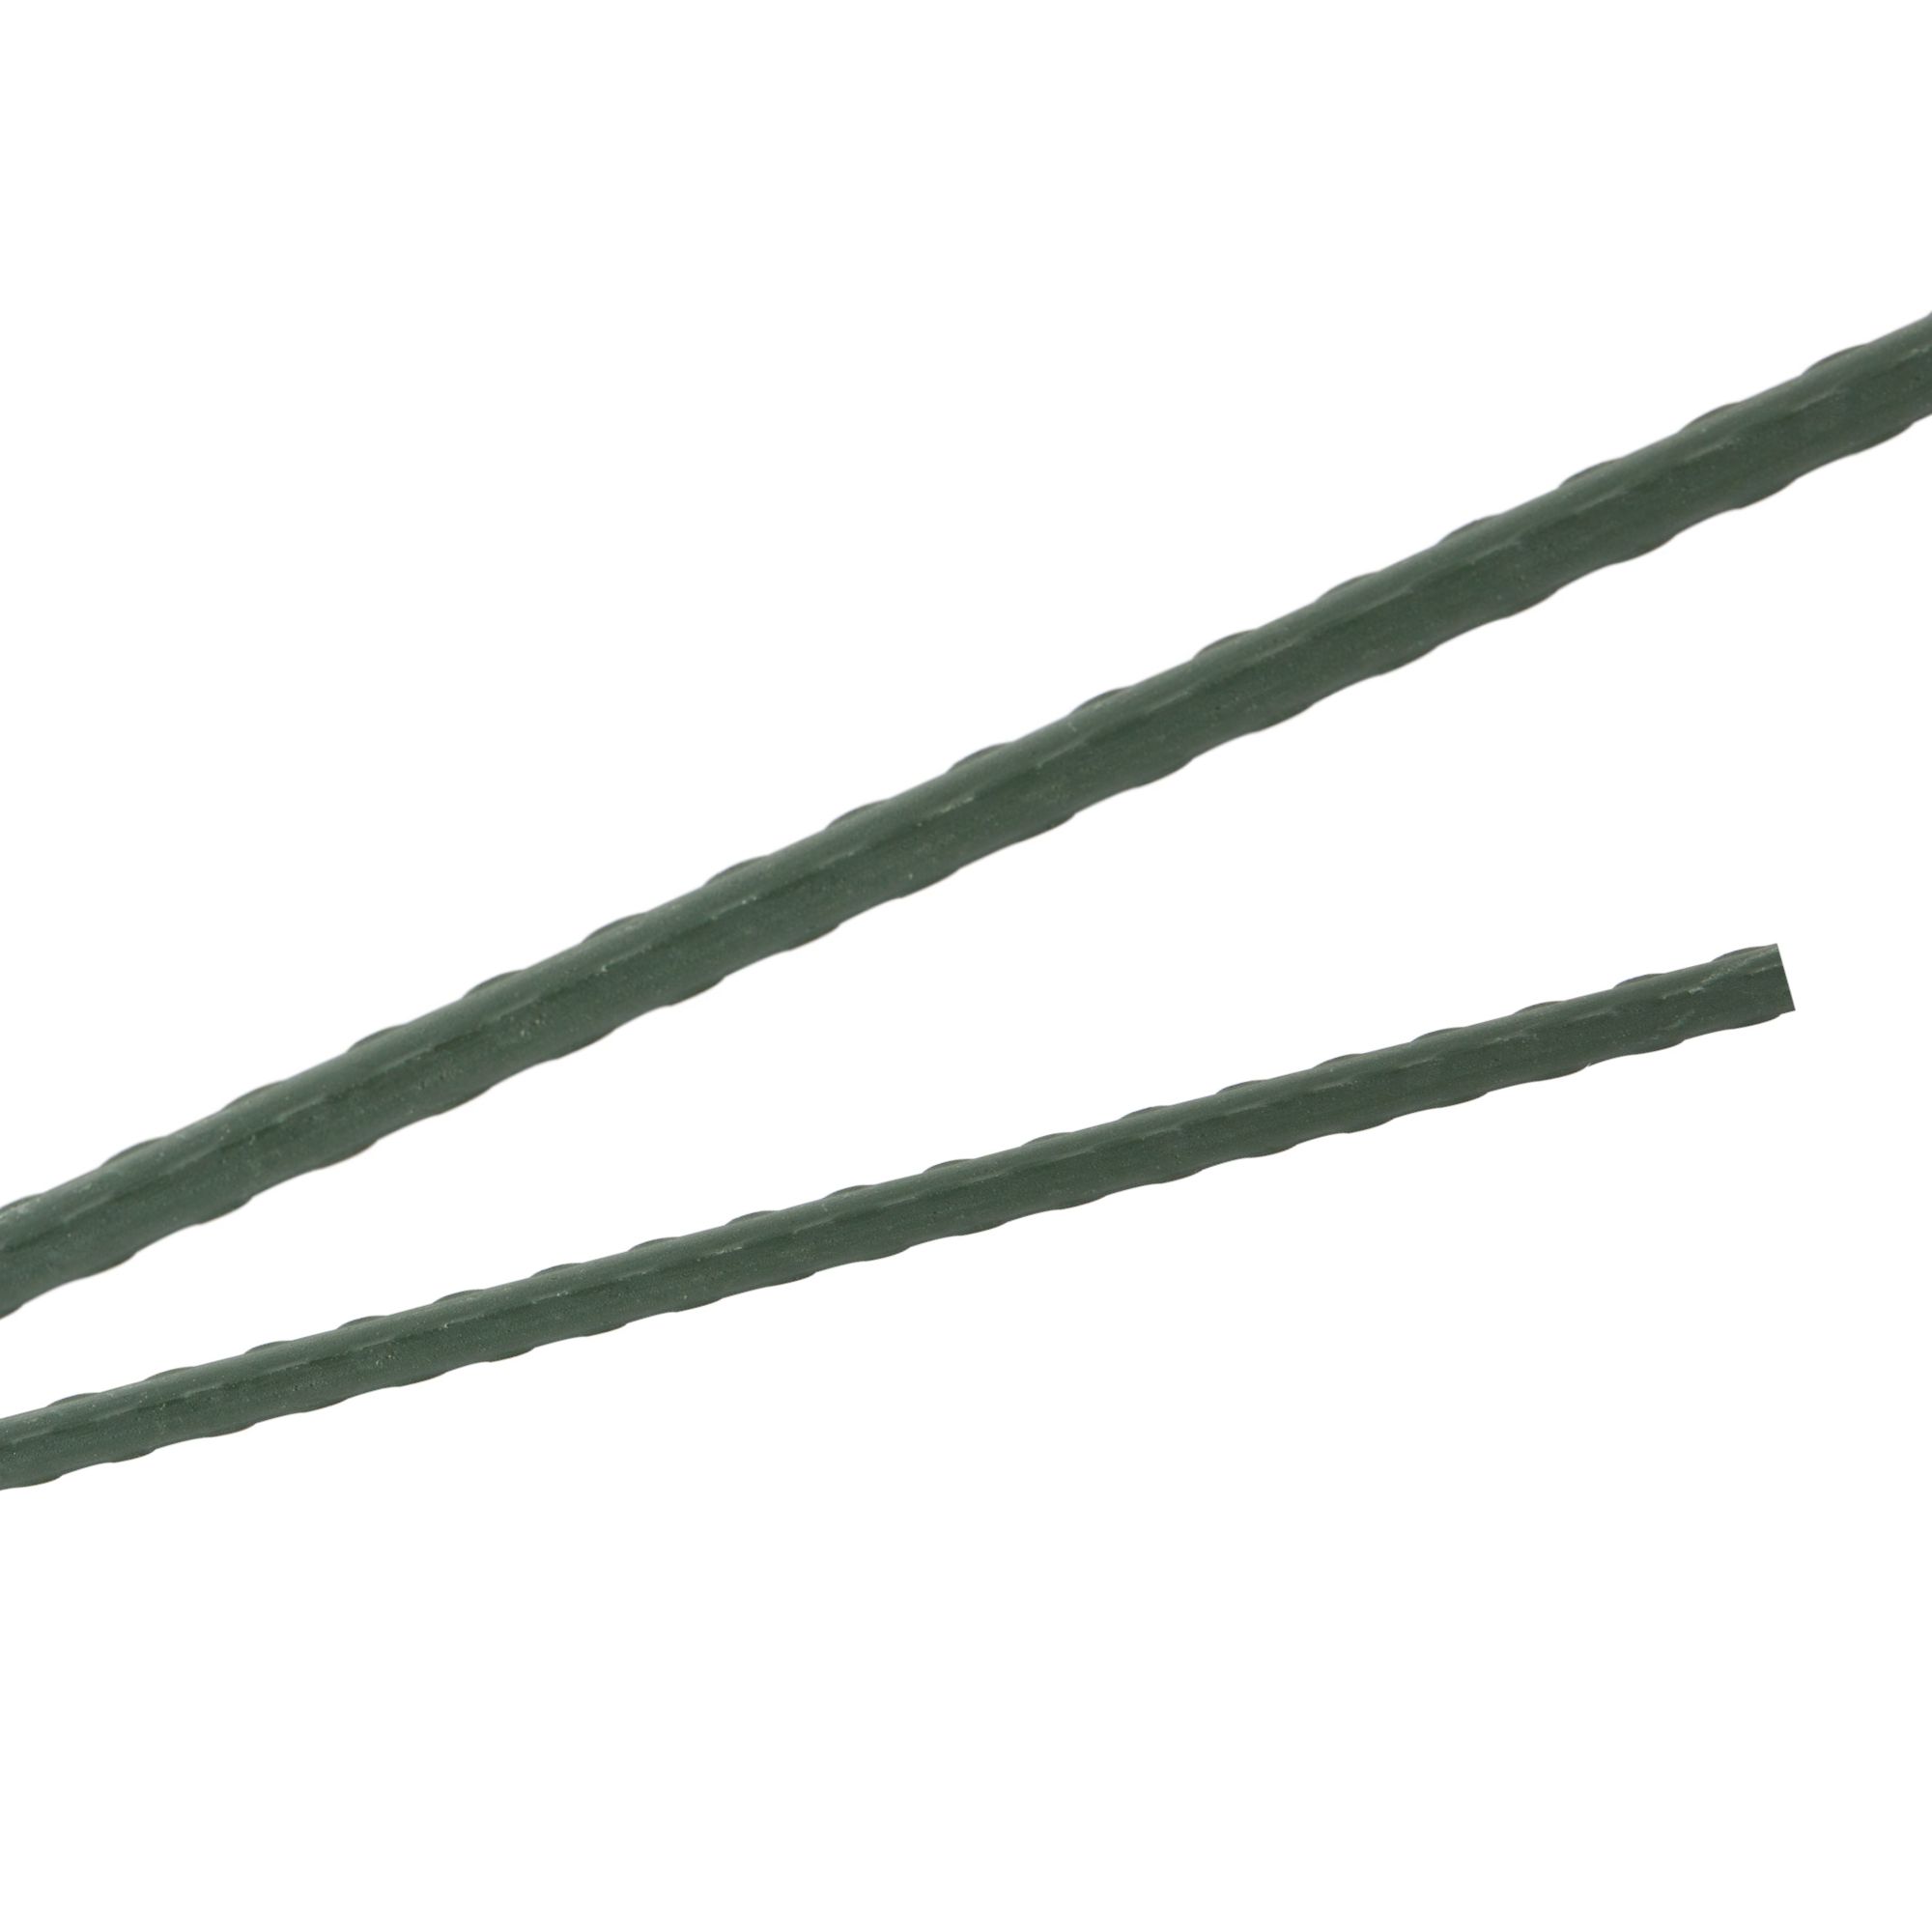 Tyč podpěrná, 8mm, 60cm, kov+PVC, zelená 0.055000 Kg GIGA Sklad20 211778 305